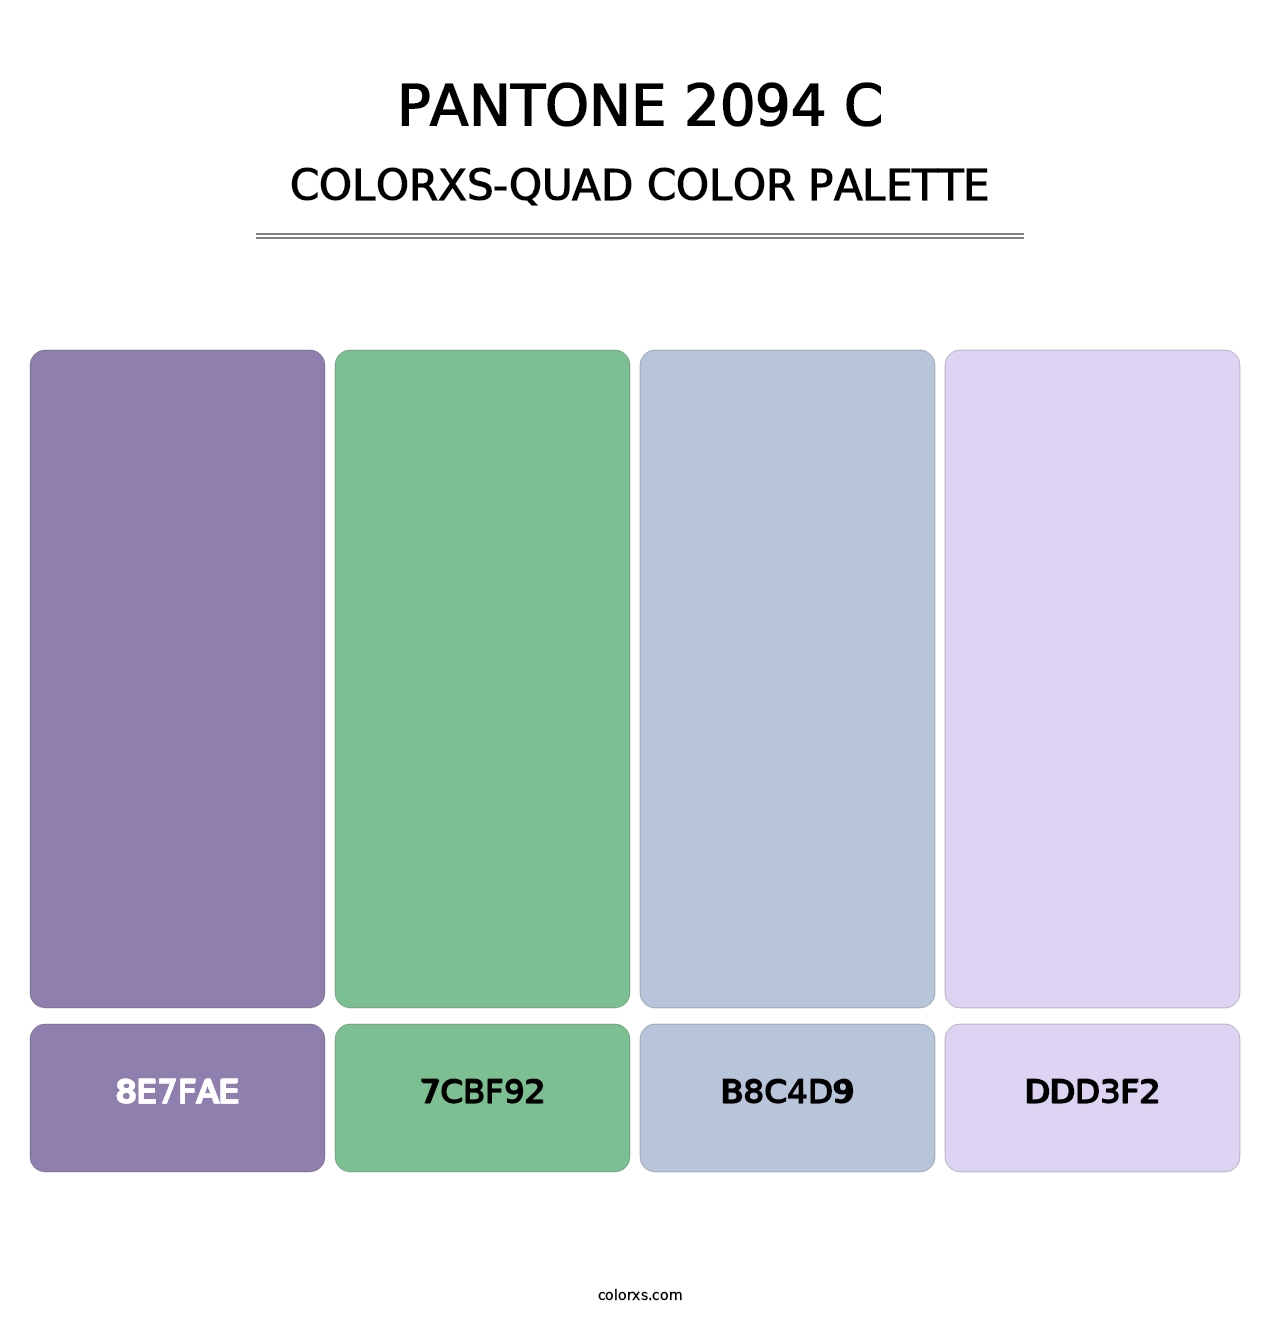 PANTONE 2094 C - Colorxs Quad Palette